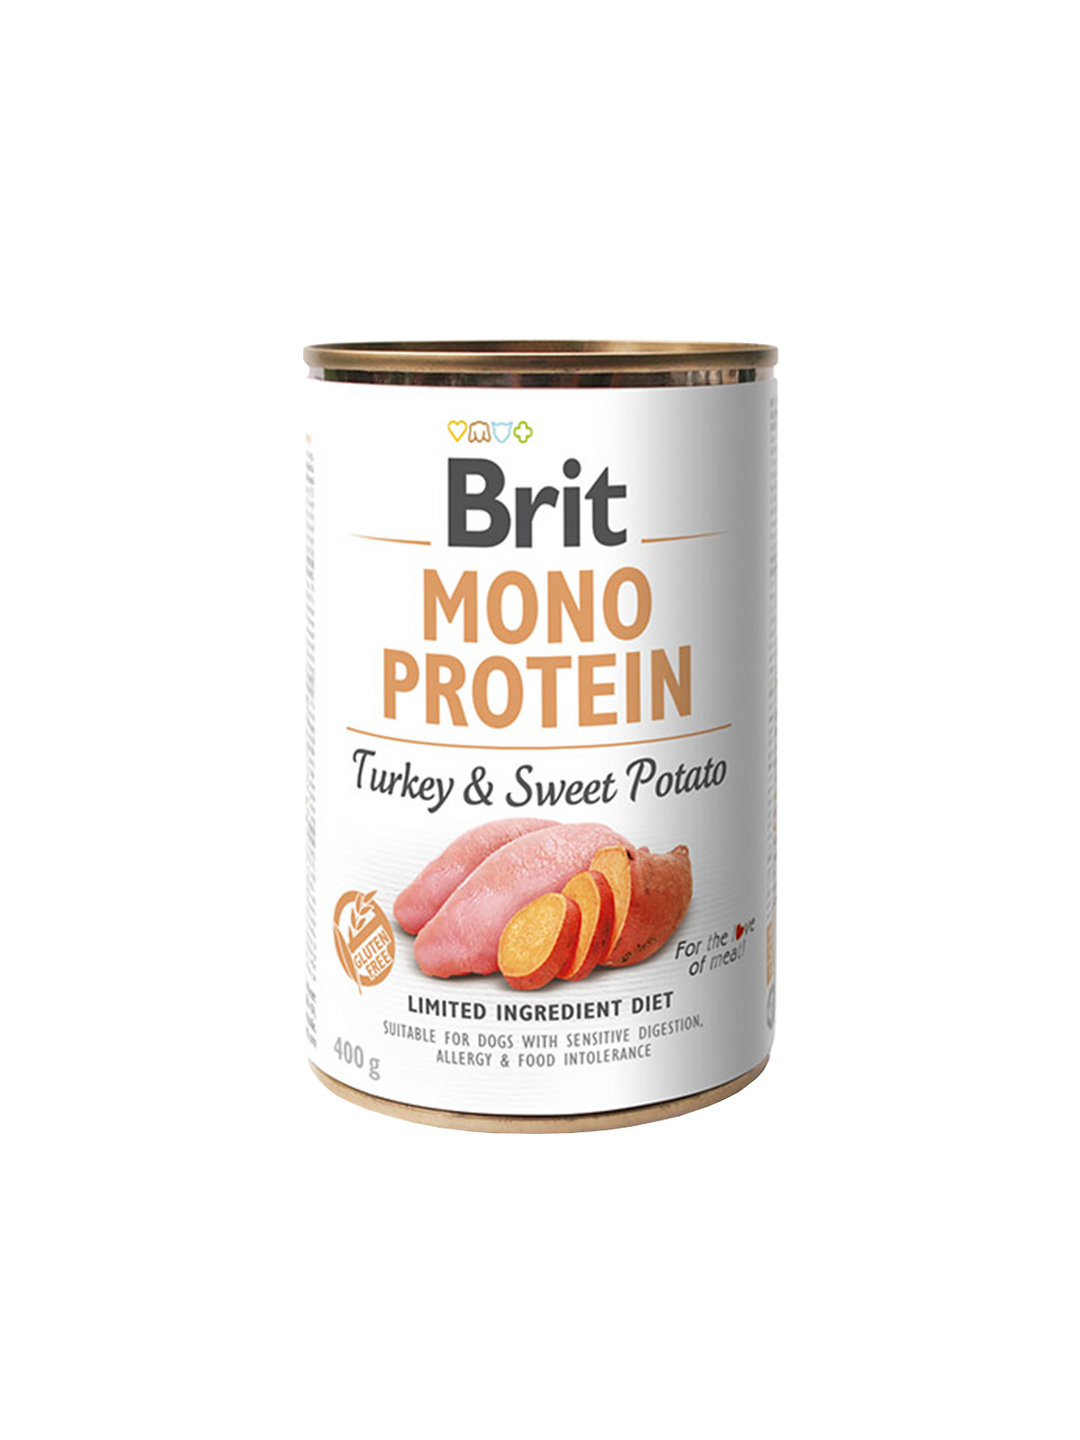 Brit Mono Protein tins 400g - Turkey & Sweet Potato